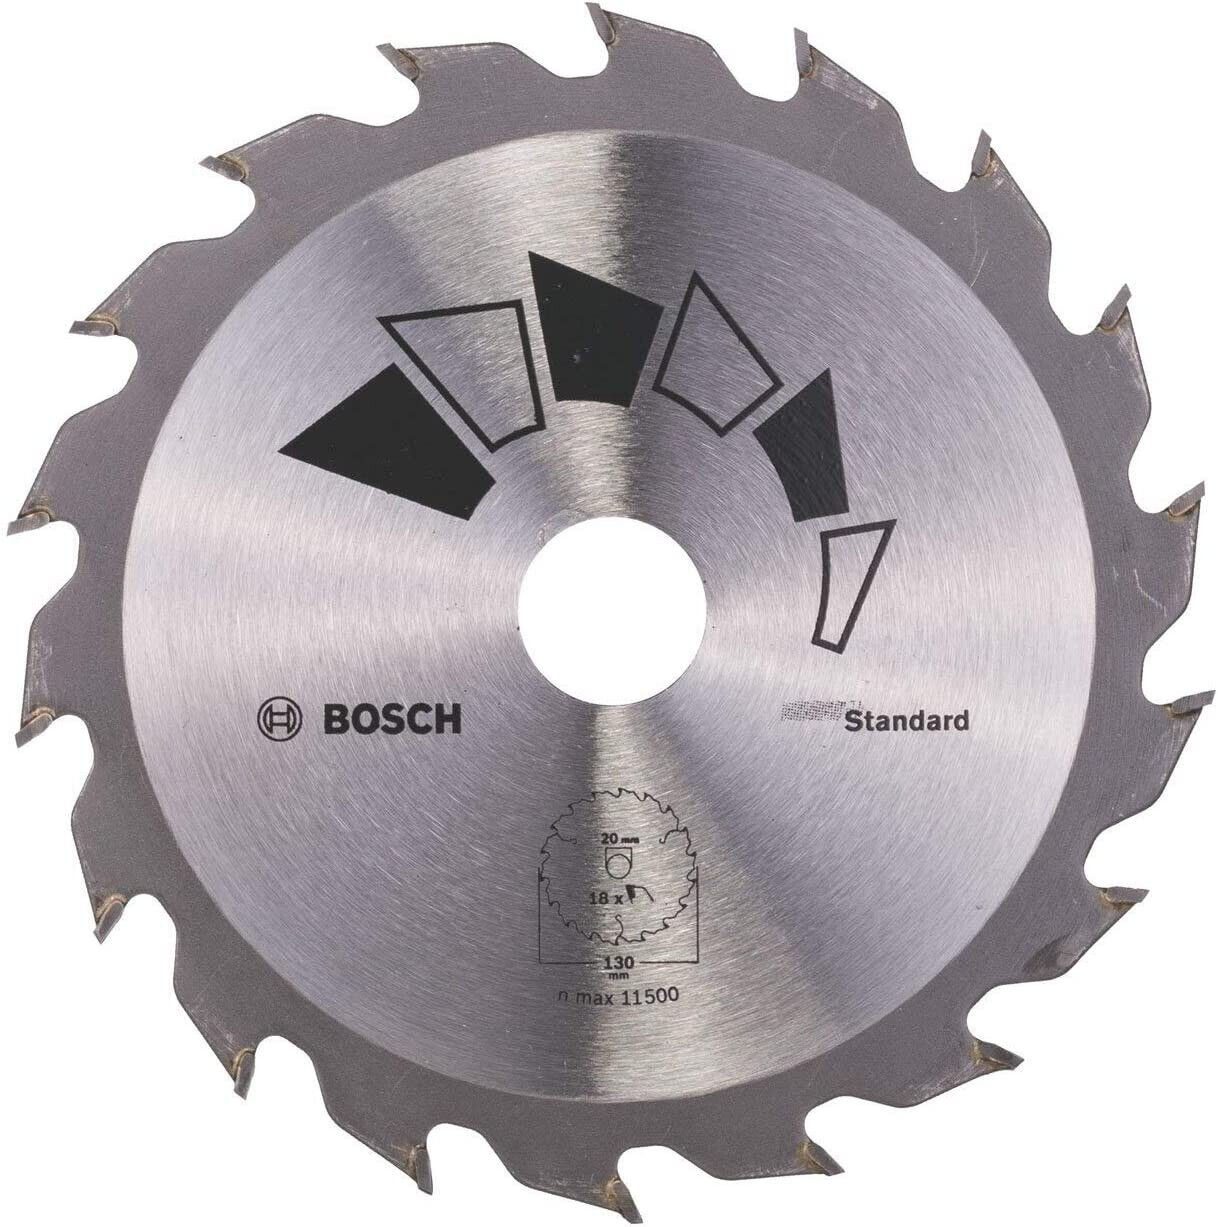 BOSCH Bohrfutter Bosch 2609256802 Kreissägeblatt Basic 130 x 2.2 x 20/16,Z18